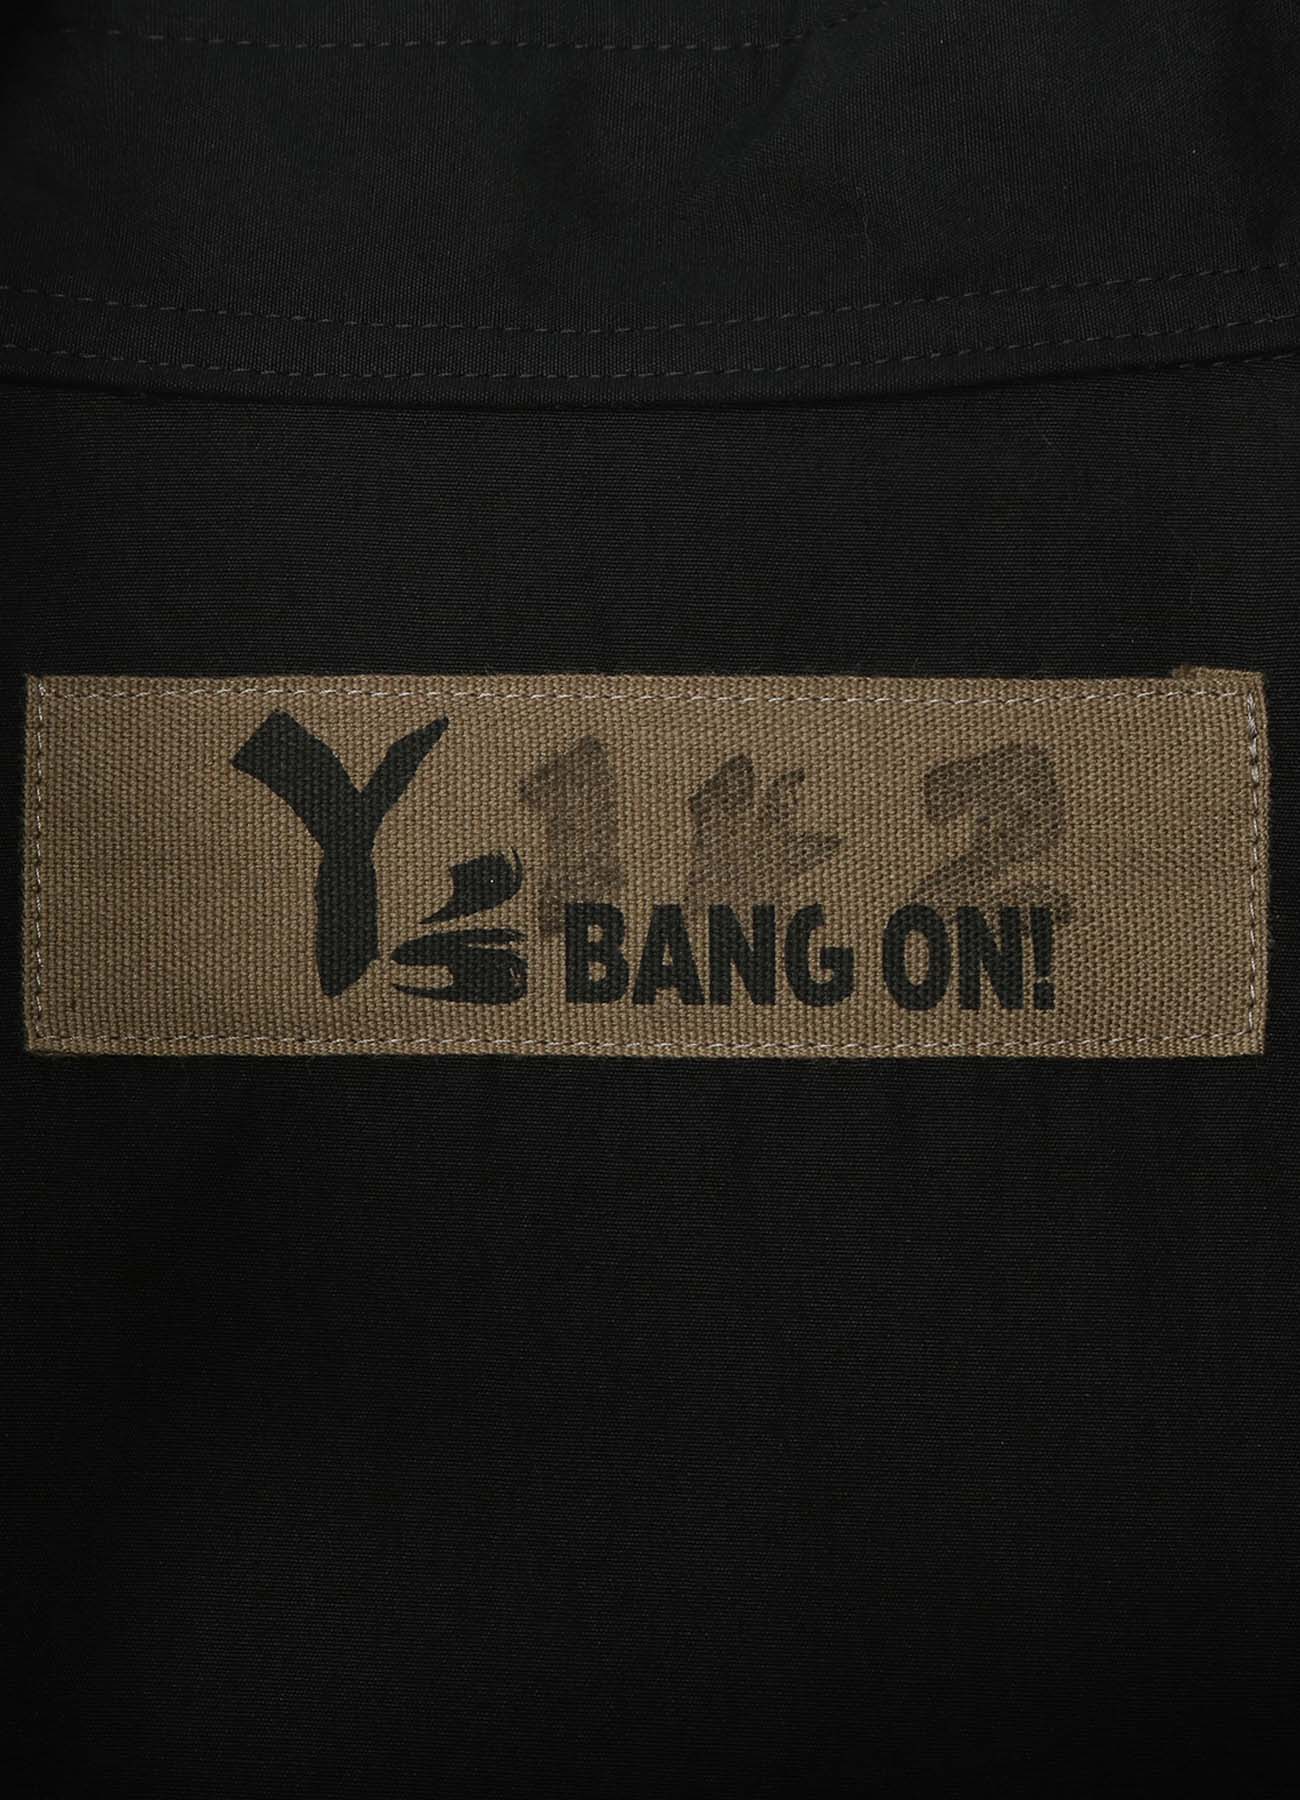 Y's BANG ON!No.142 BLACK BROAD CHINA BUTTON SHIRTS